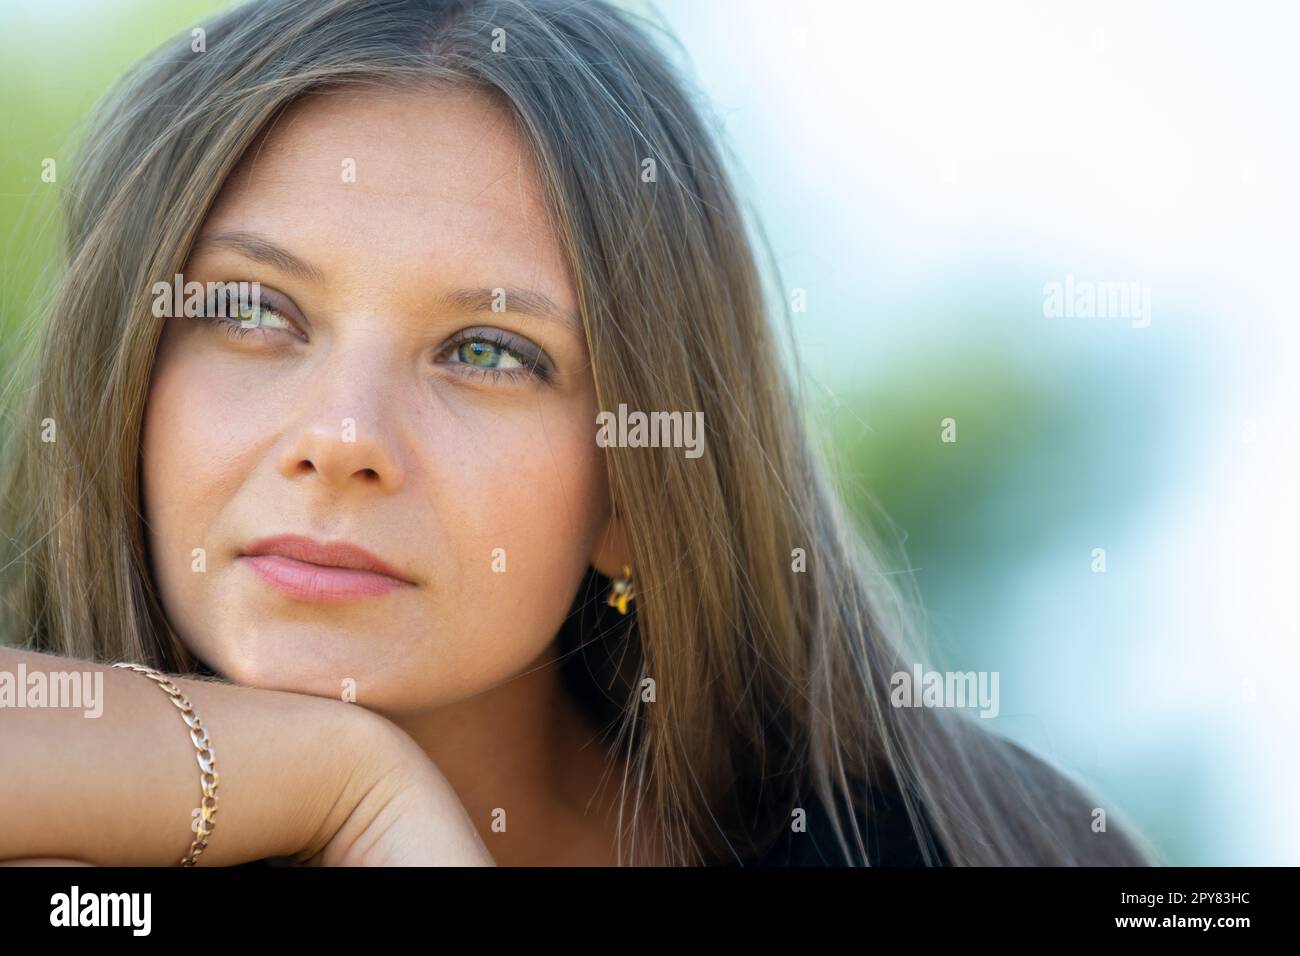 Nahaufnahme eines schönen 25-jährigen Mädchens slawischen Aussehens Stockfoto